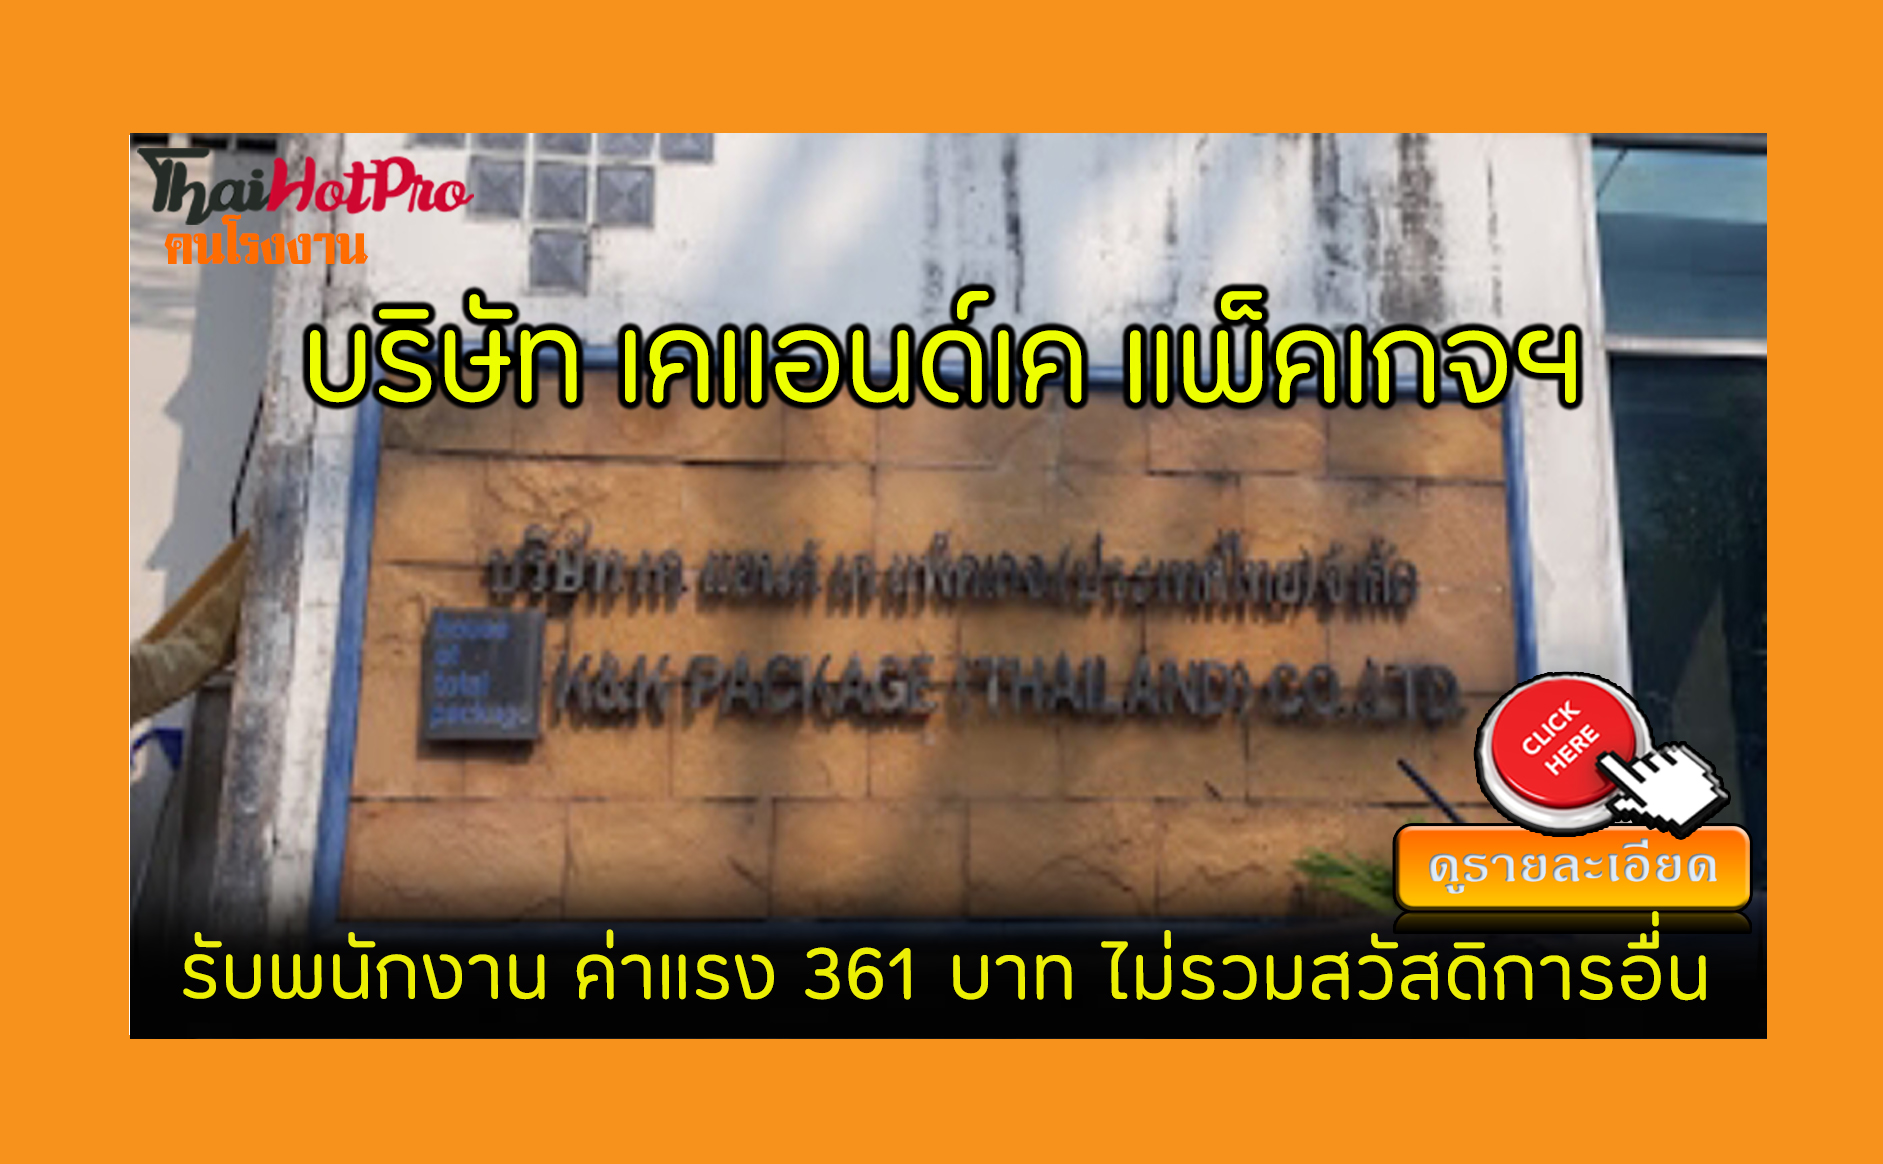 #ข่าวสมัครงาน รับสมัครพนักงาน บริษัท เคแอนด์เค แพ็คเกจ (ประเทศไทย) จำกัด รับสมัครพนักงาน ค่าแรง 361 บาท ไม่รวมสวัสดิการอื่น ศรีราชา, ชลบุรี